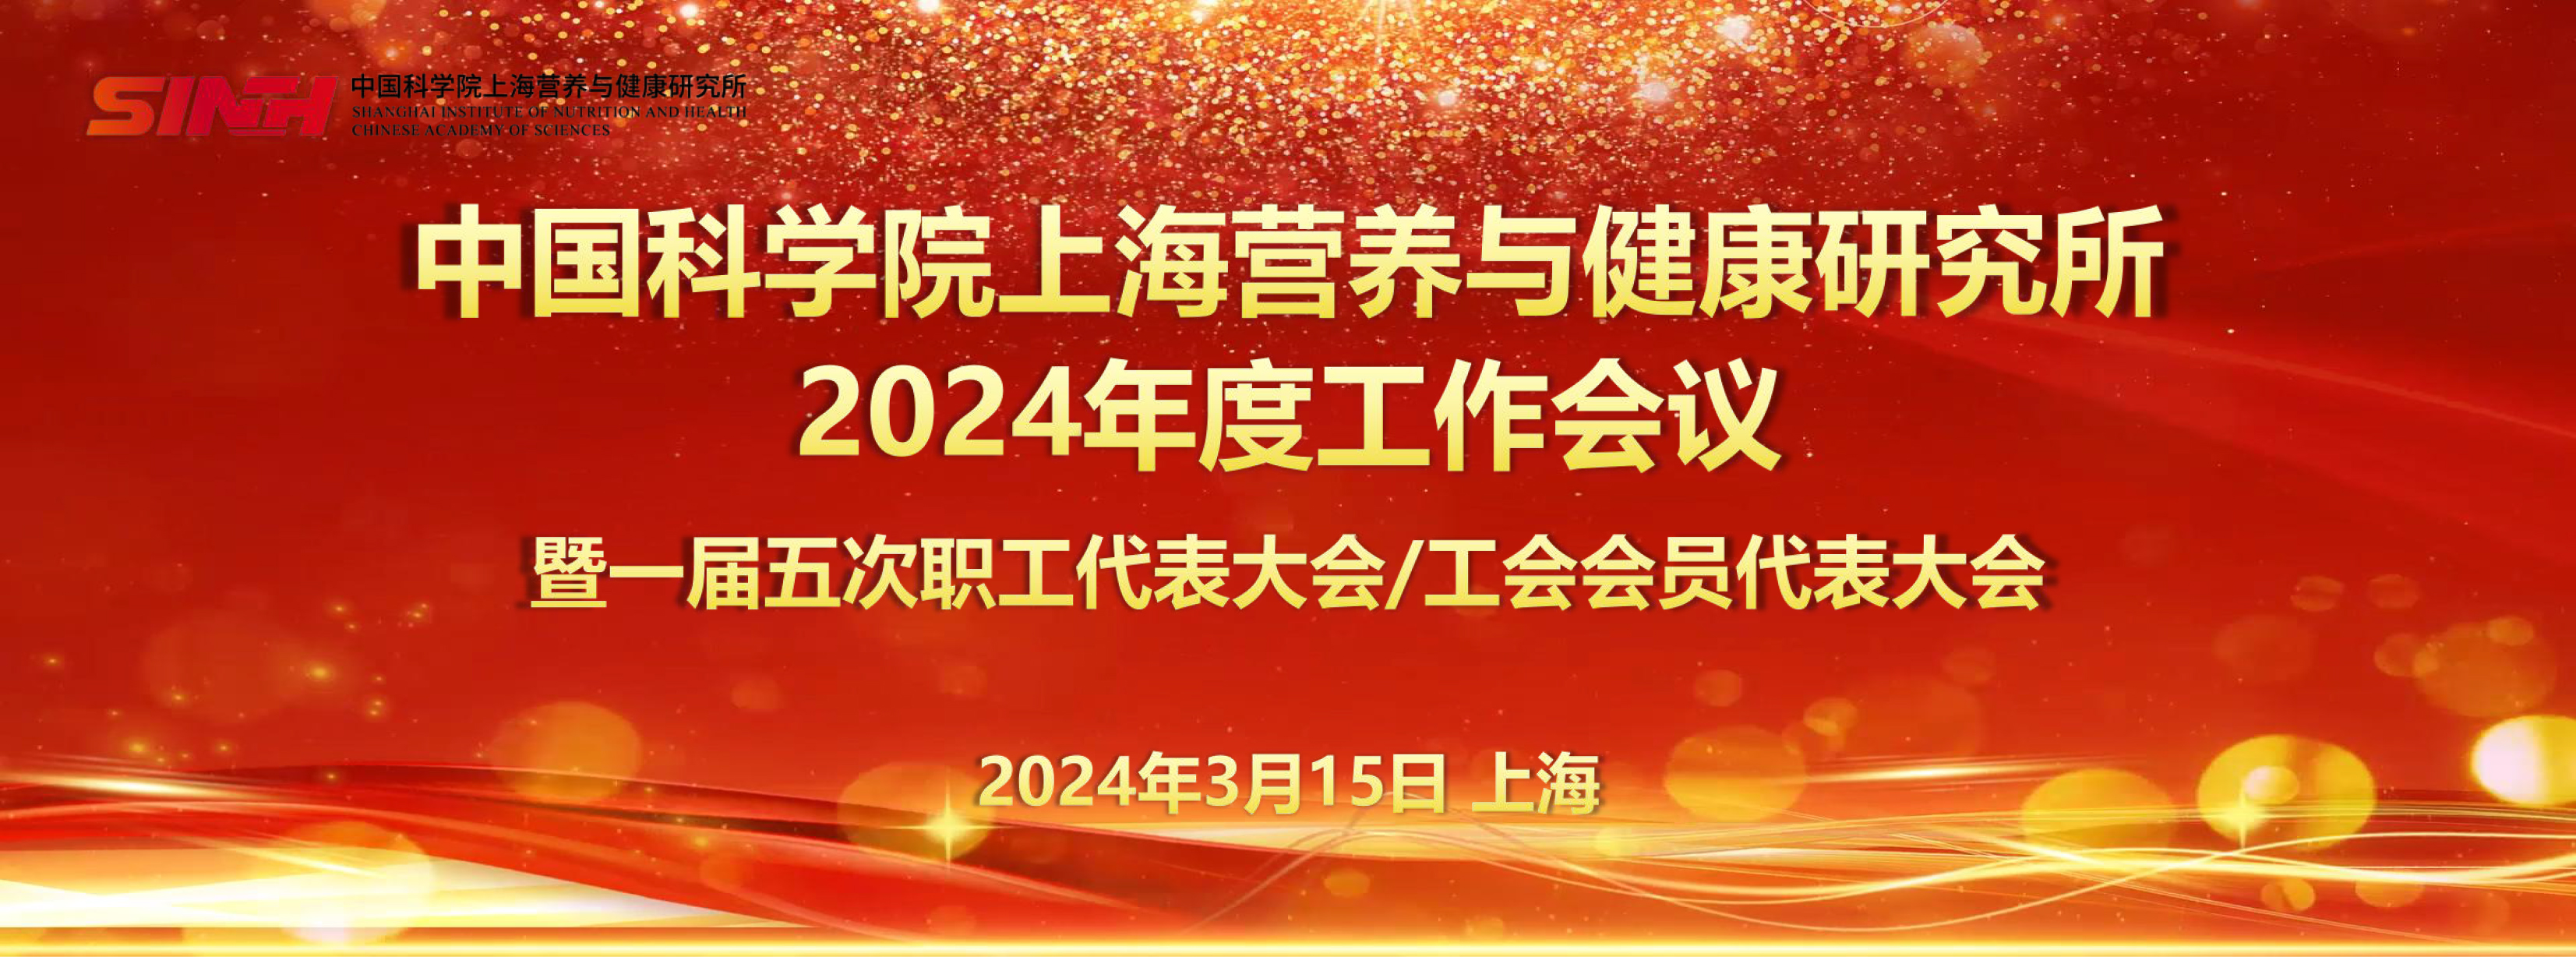 中国科学院上海营养与健康研究所召开2024年度工作会议暨一届五次职工代表大会/工会会员代表大会